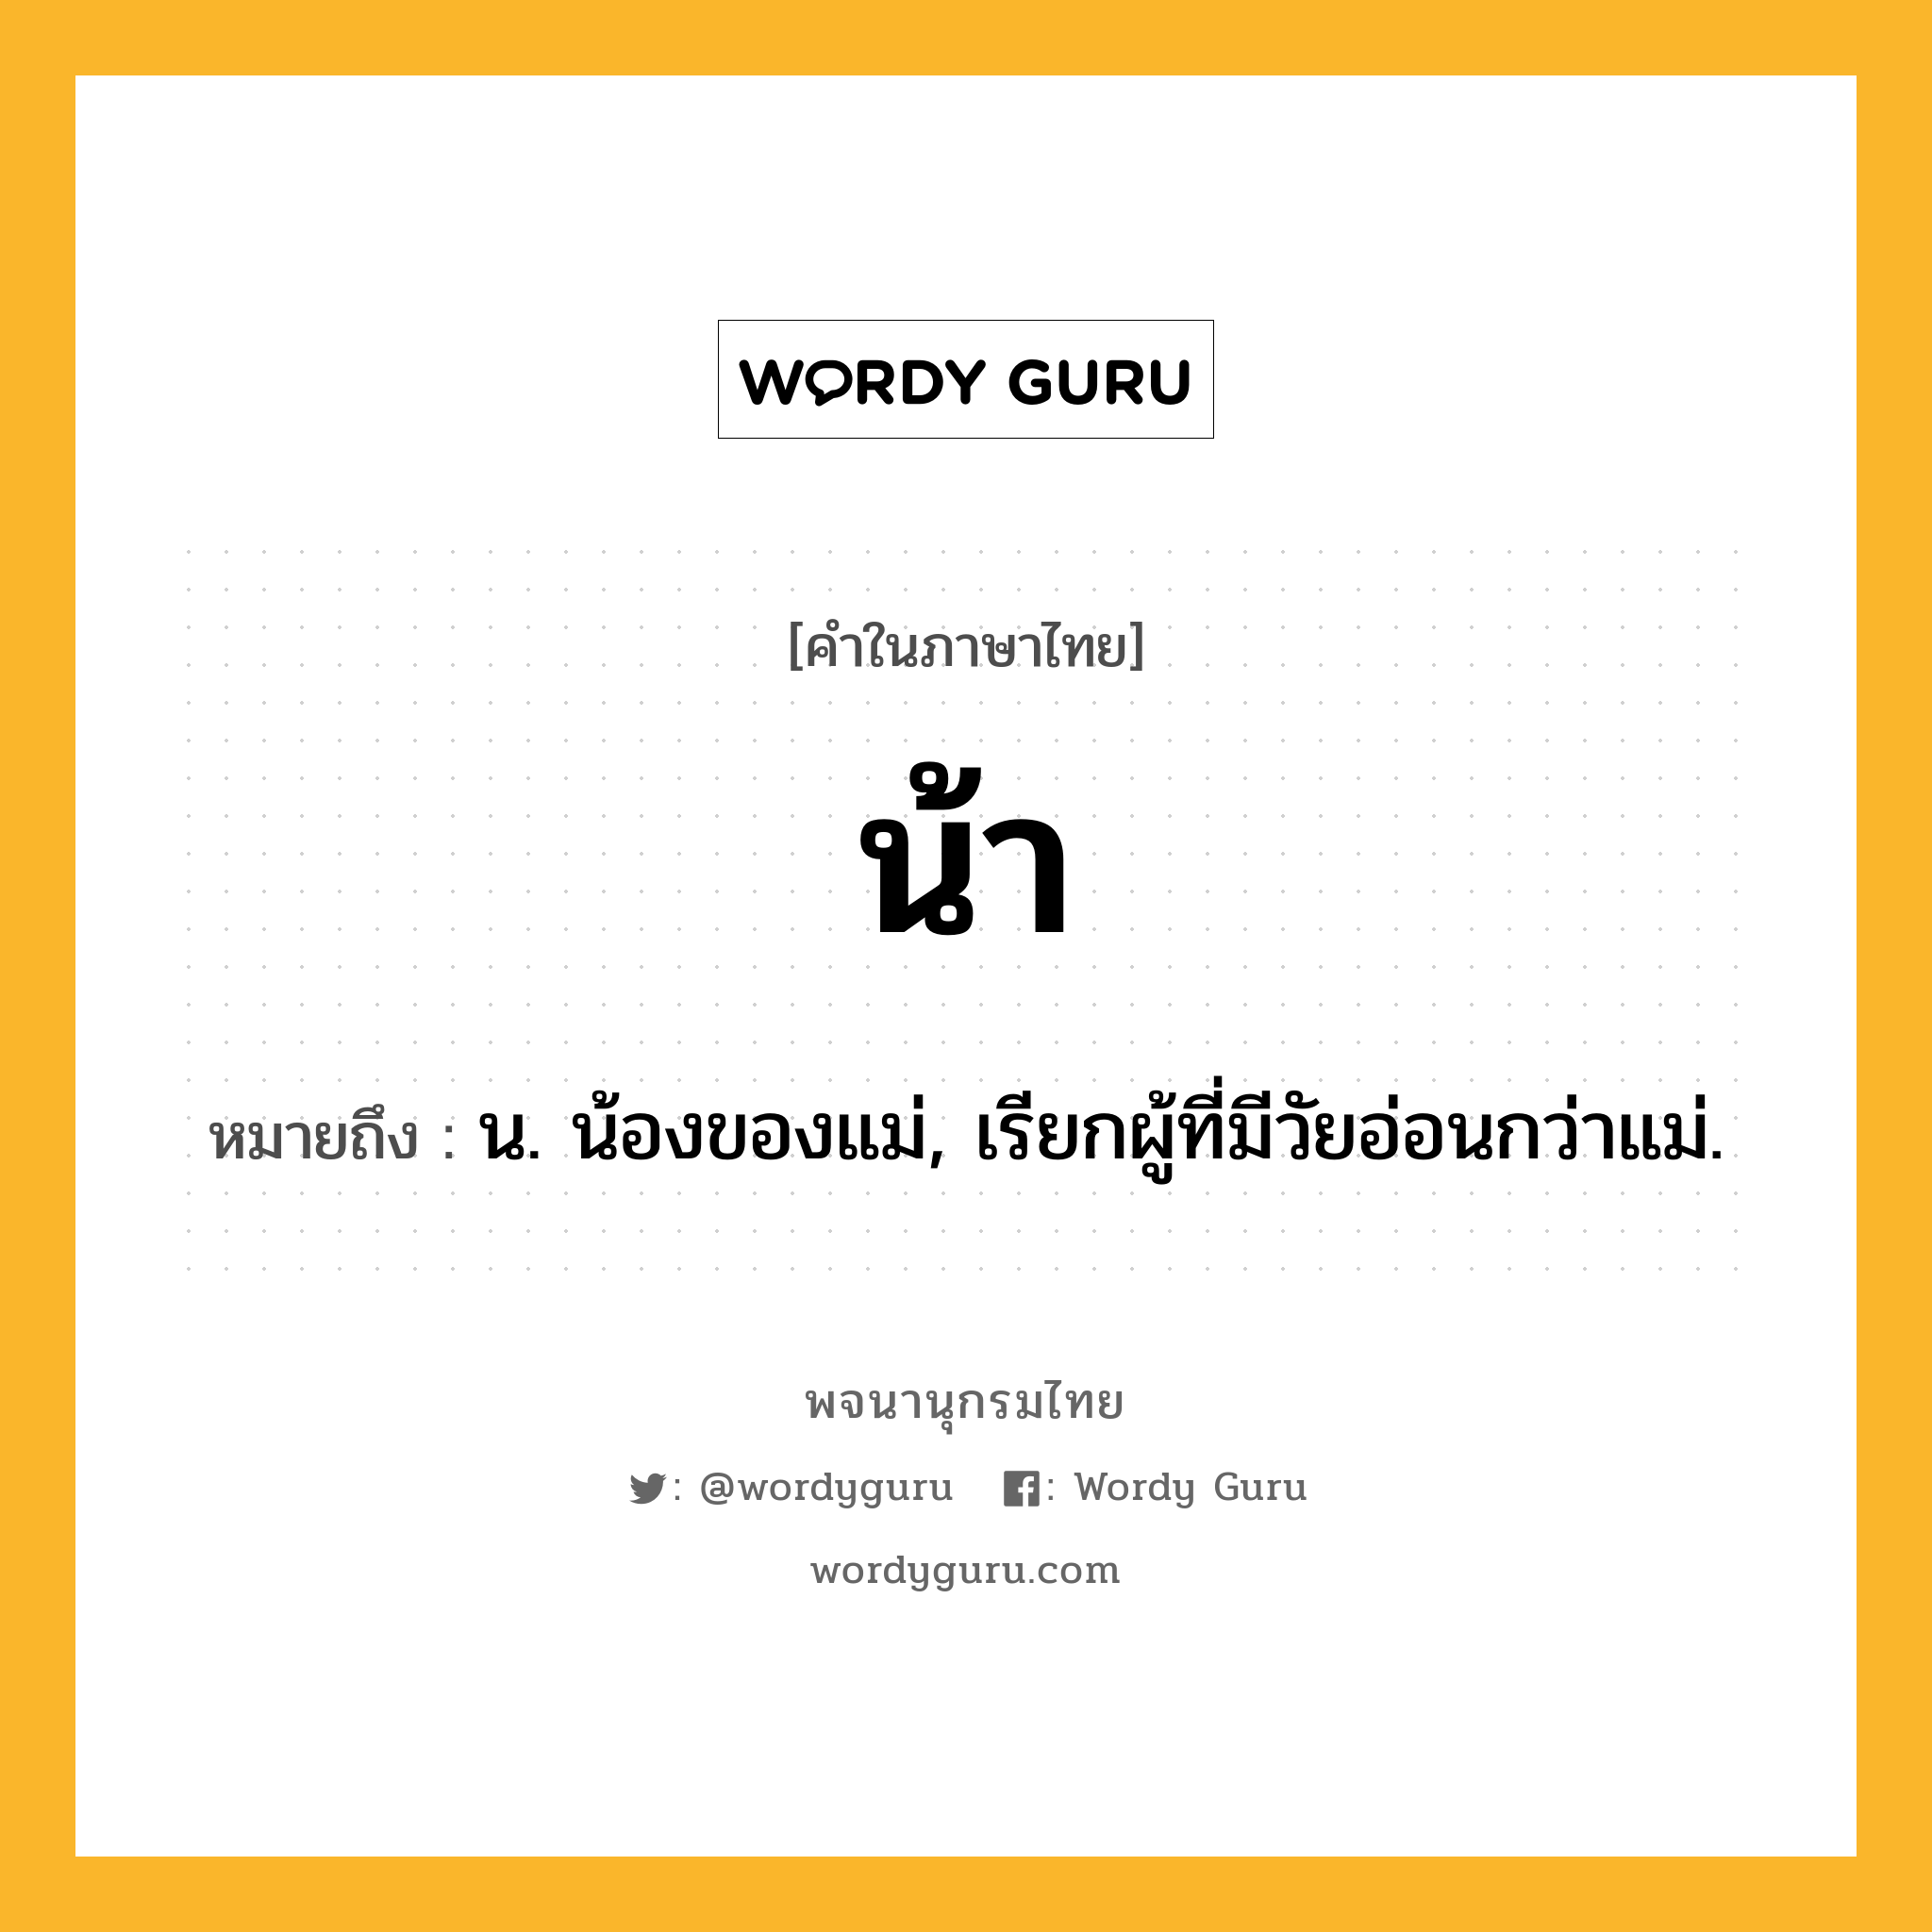 น้า ความหมาย หมายถึงอะไร?, คำในภาษาไทย น้า หมายถึง น. น้องของแม่, เรียกผู้ที่มีวัยอ่อนกว่าแม่.